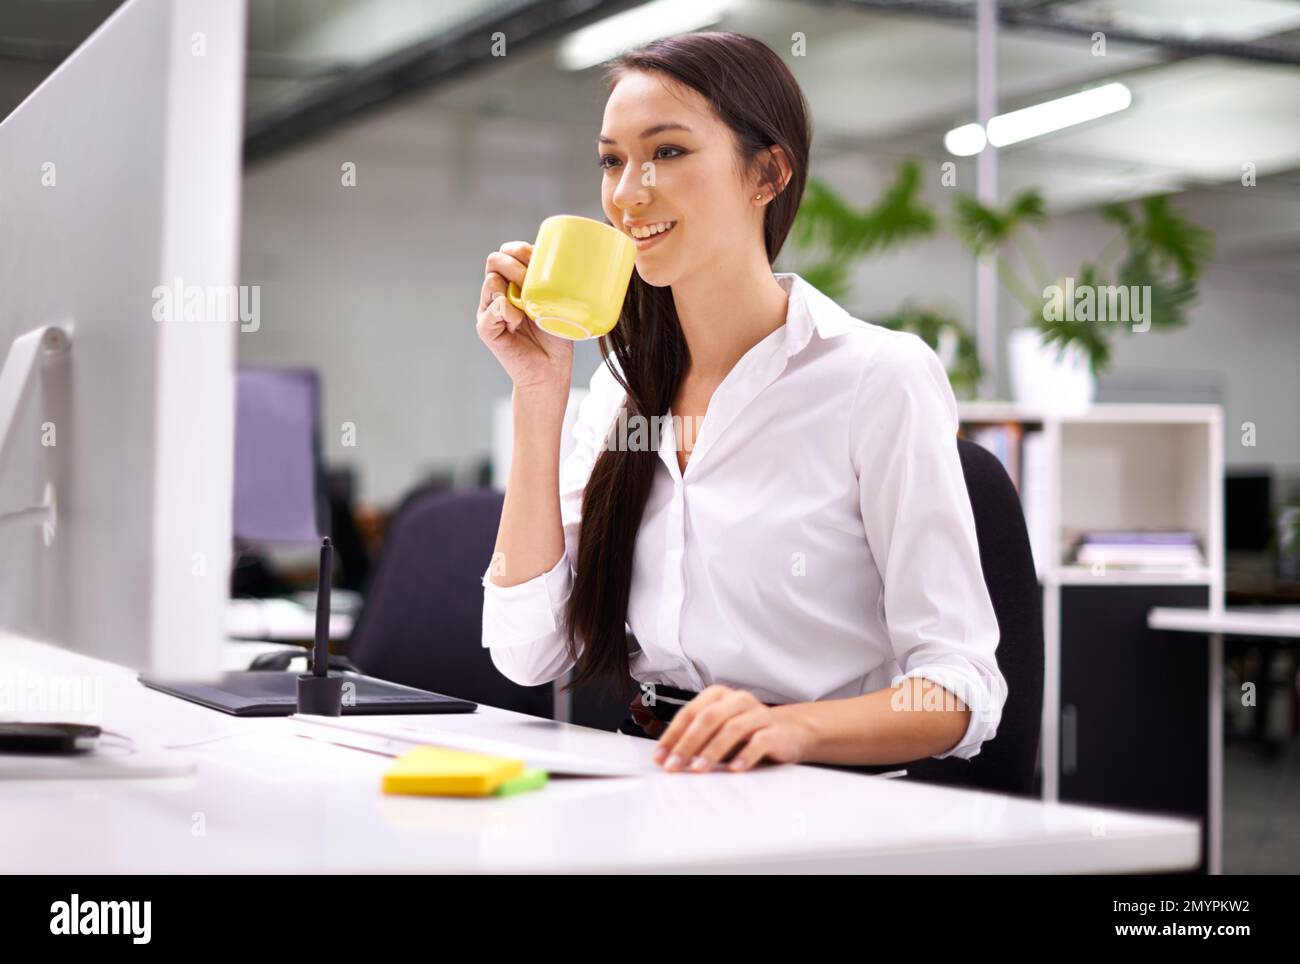 Beginnen Sie Ihren Arbeitstag mit einer Tasse Kaffee. Eine attraktive junge Frau, die an ihrem Schreibtisch arbeitet. Stockfoto